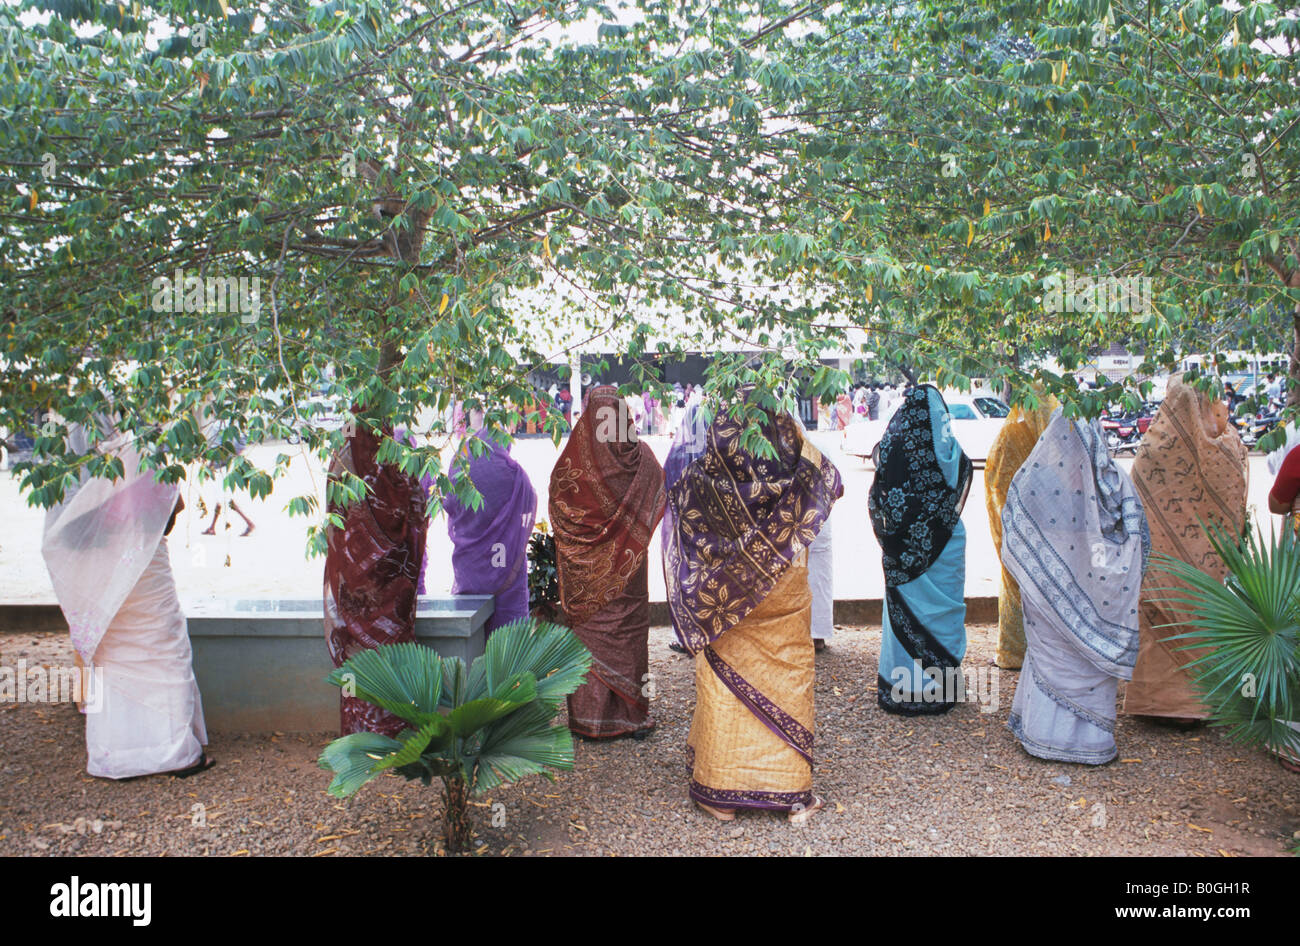 Les femmes en costume traditionnel au milieu des arbres, Parumala, Inde. Banque D'Images